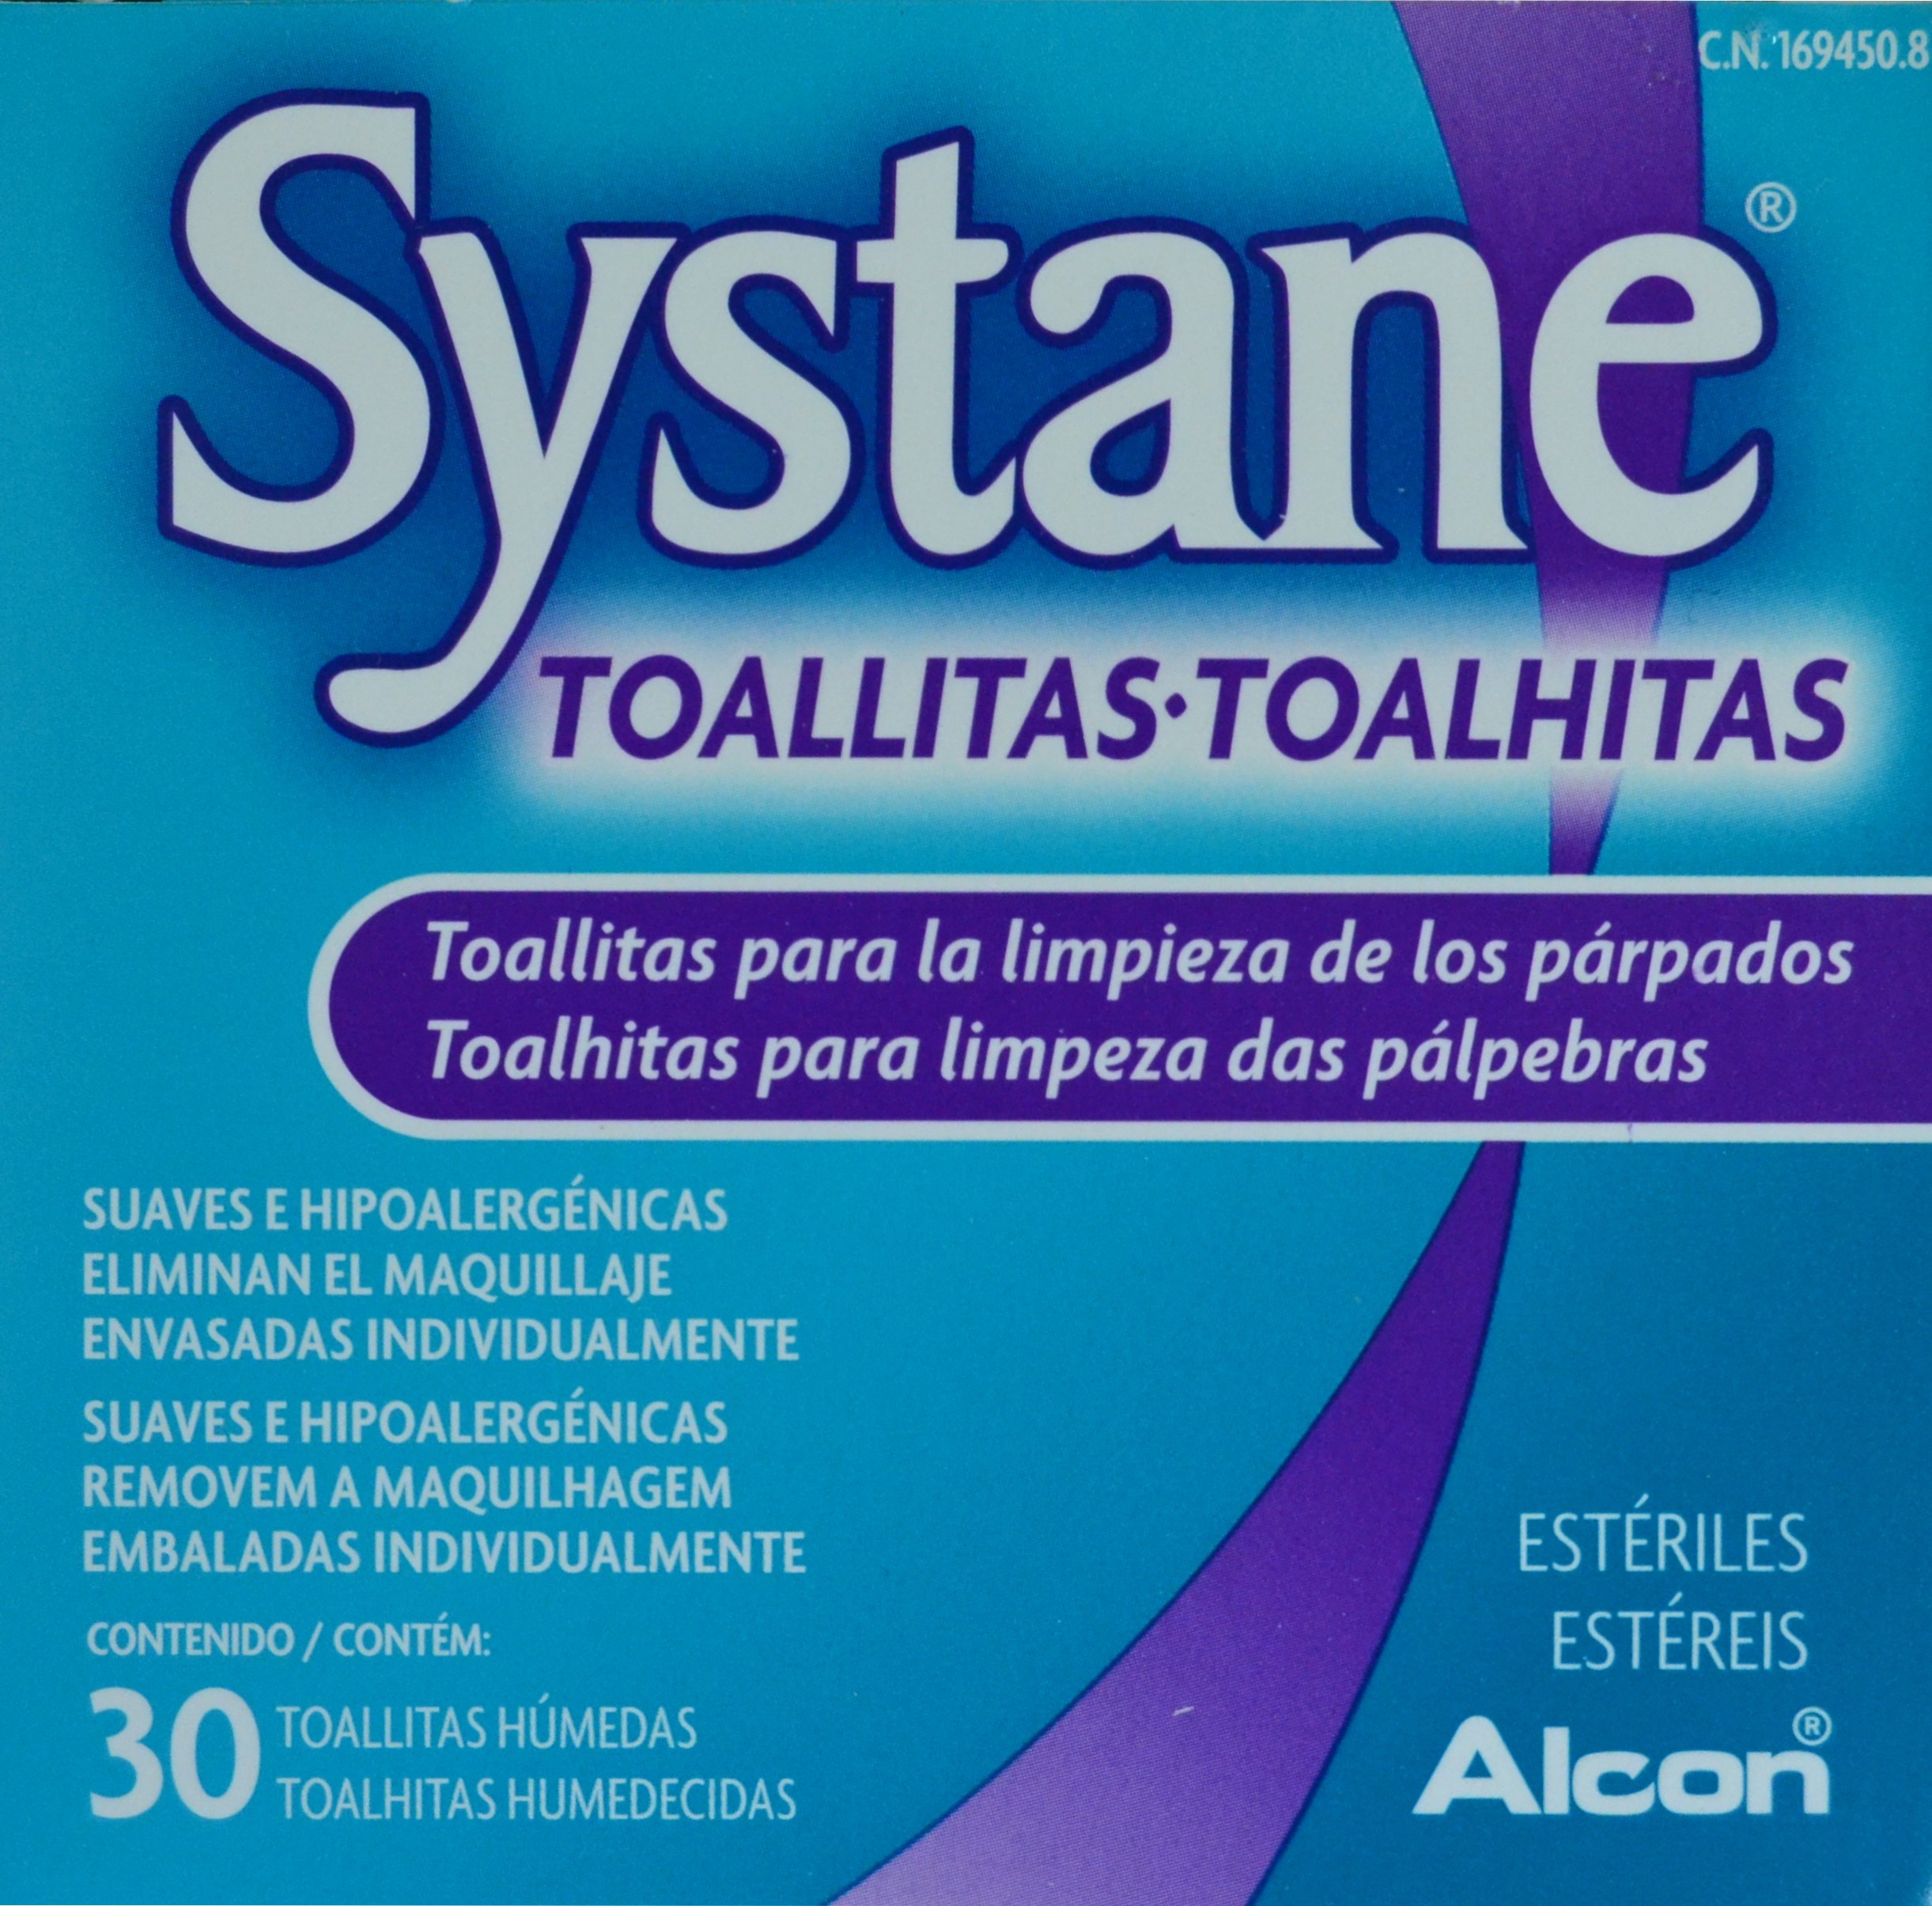 Systane Toallitas húmedas estériles 30 toallitas para higiene ocular